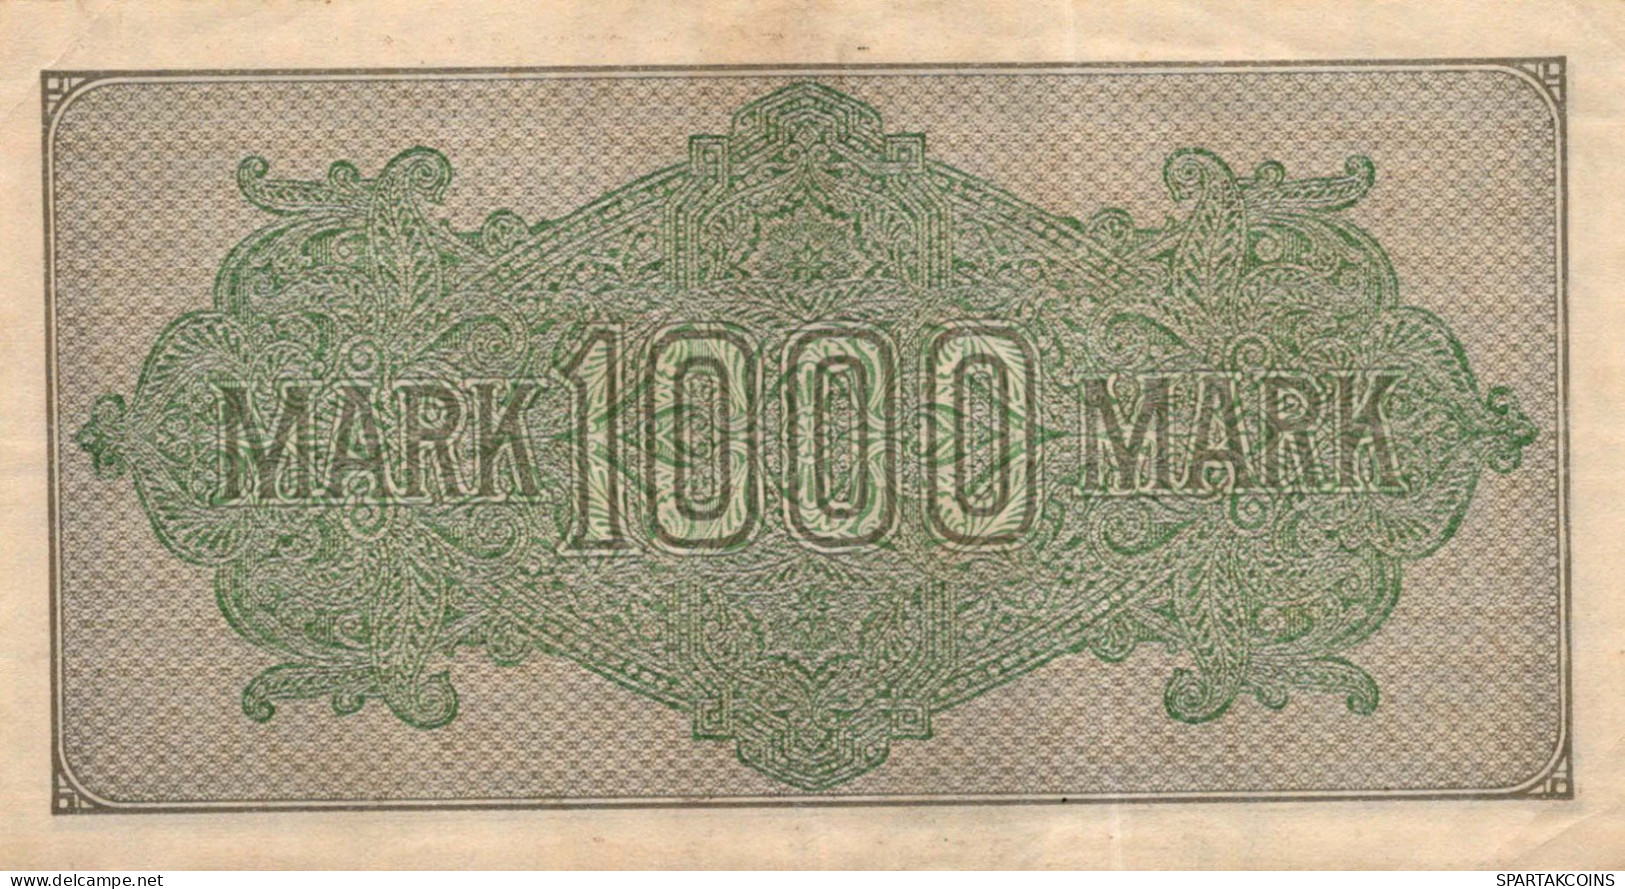 1000 MARK 1922 Stadt BERLIN DEUTSCHLAND Papiergeld Banknote #PL411 - [11] Emissioni Locali